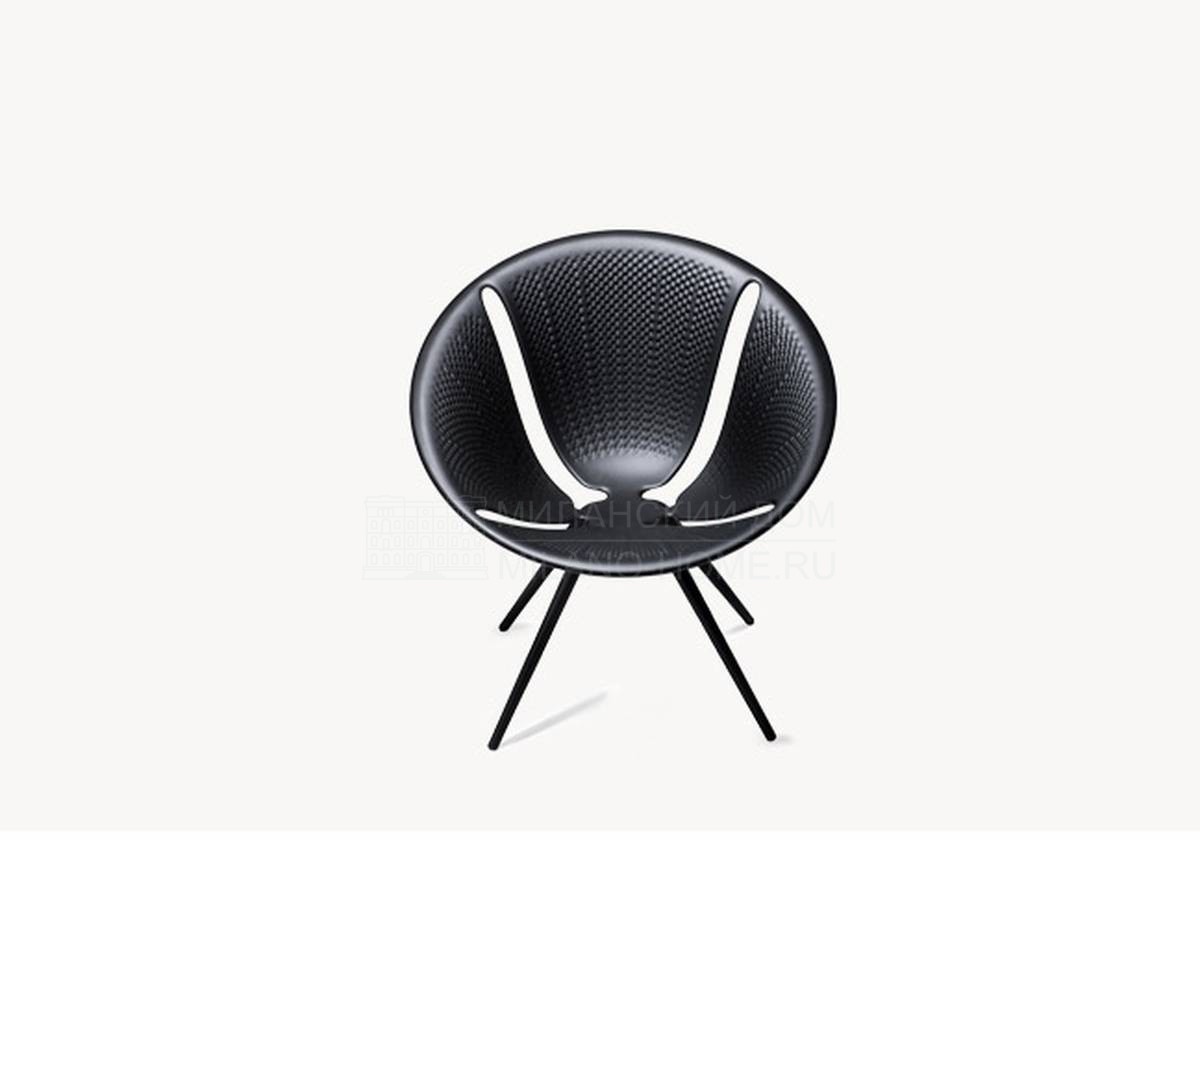 Металлический / Пластиковый стул Diatom / art.DT0061/ DT001F из Италии фабрики MOROSO